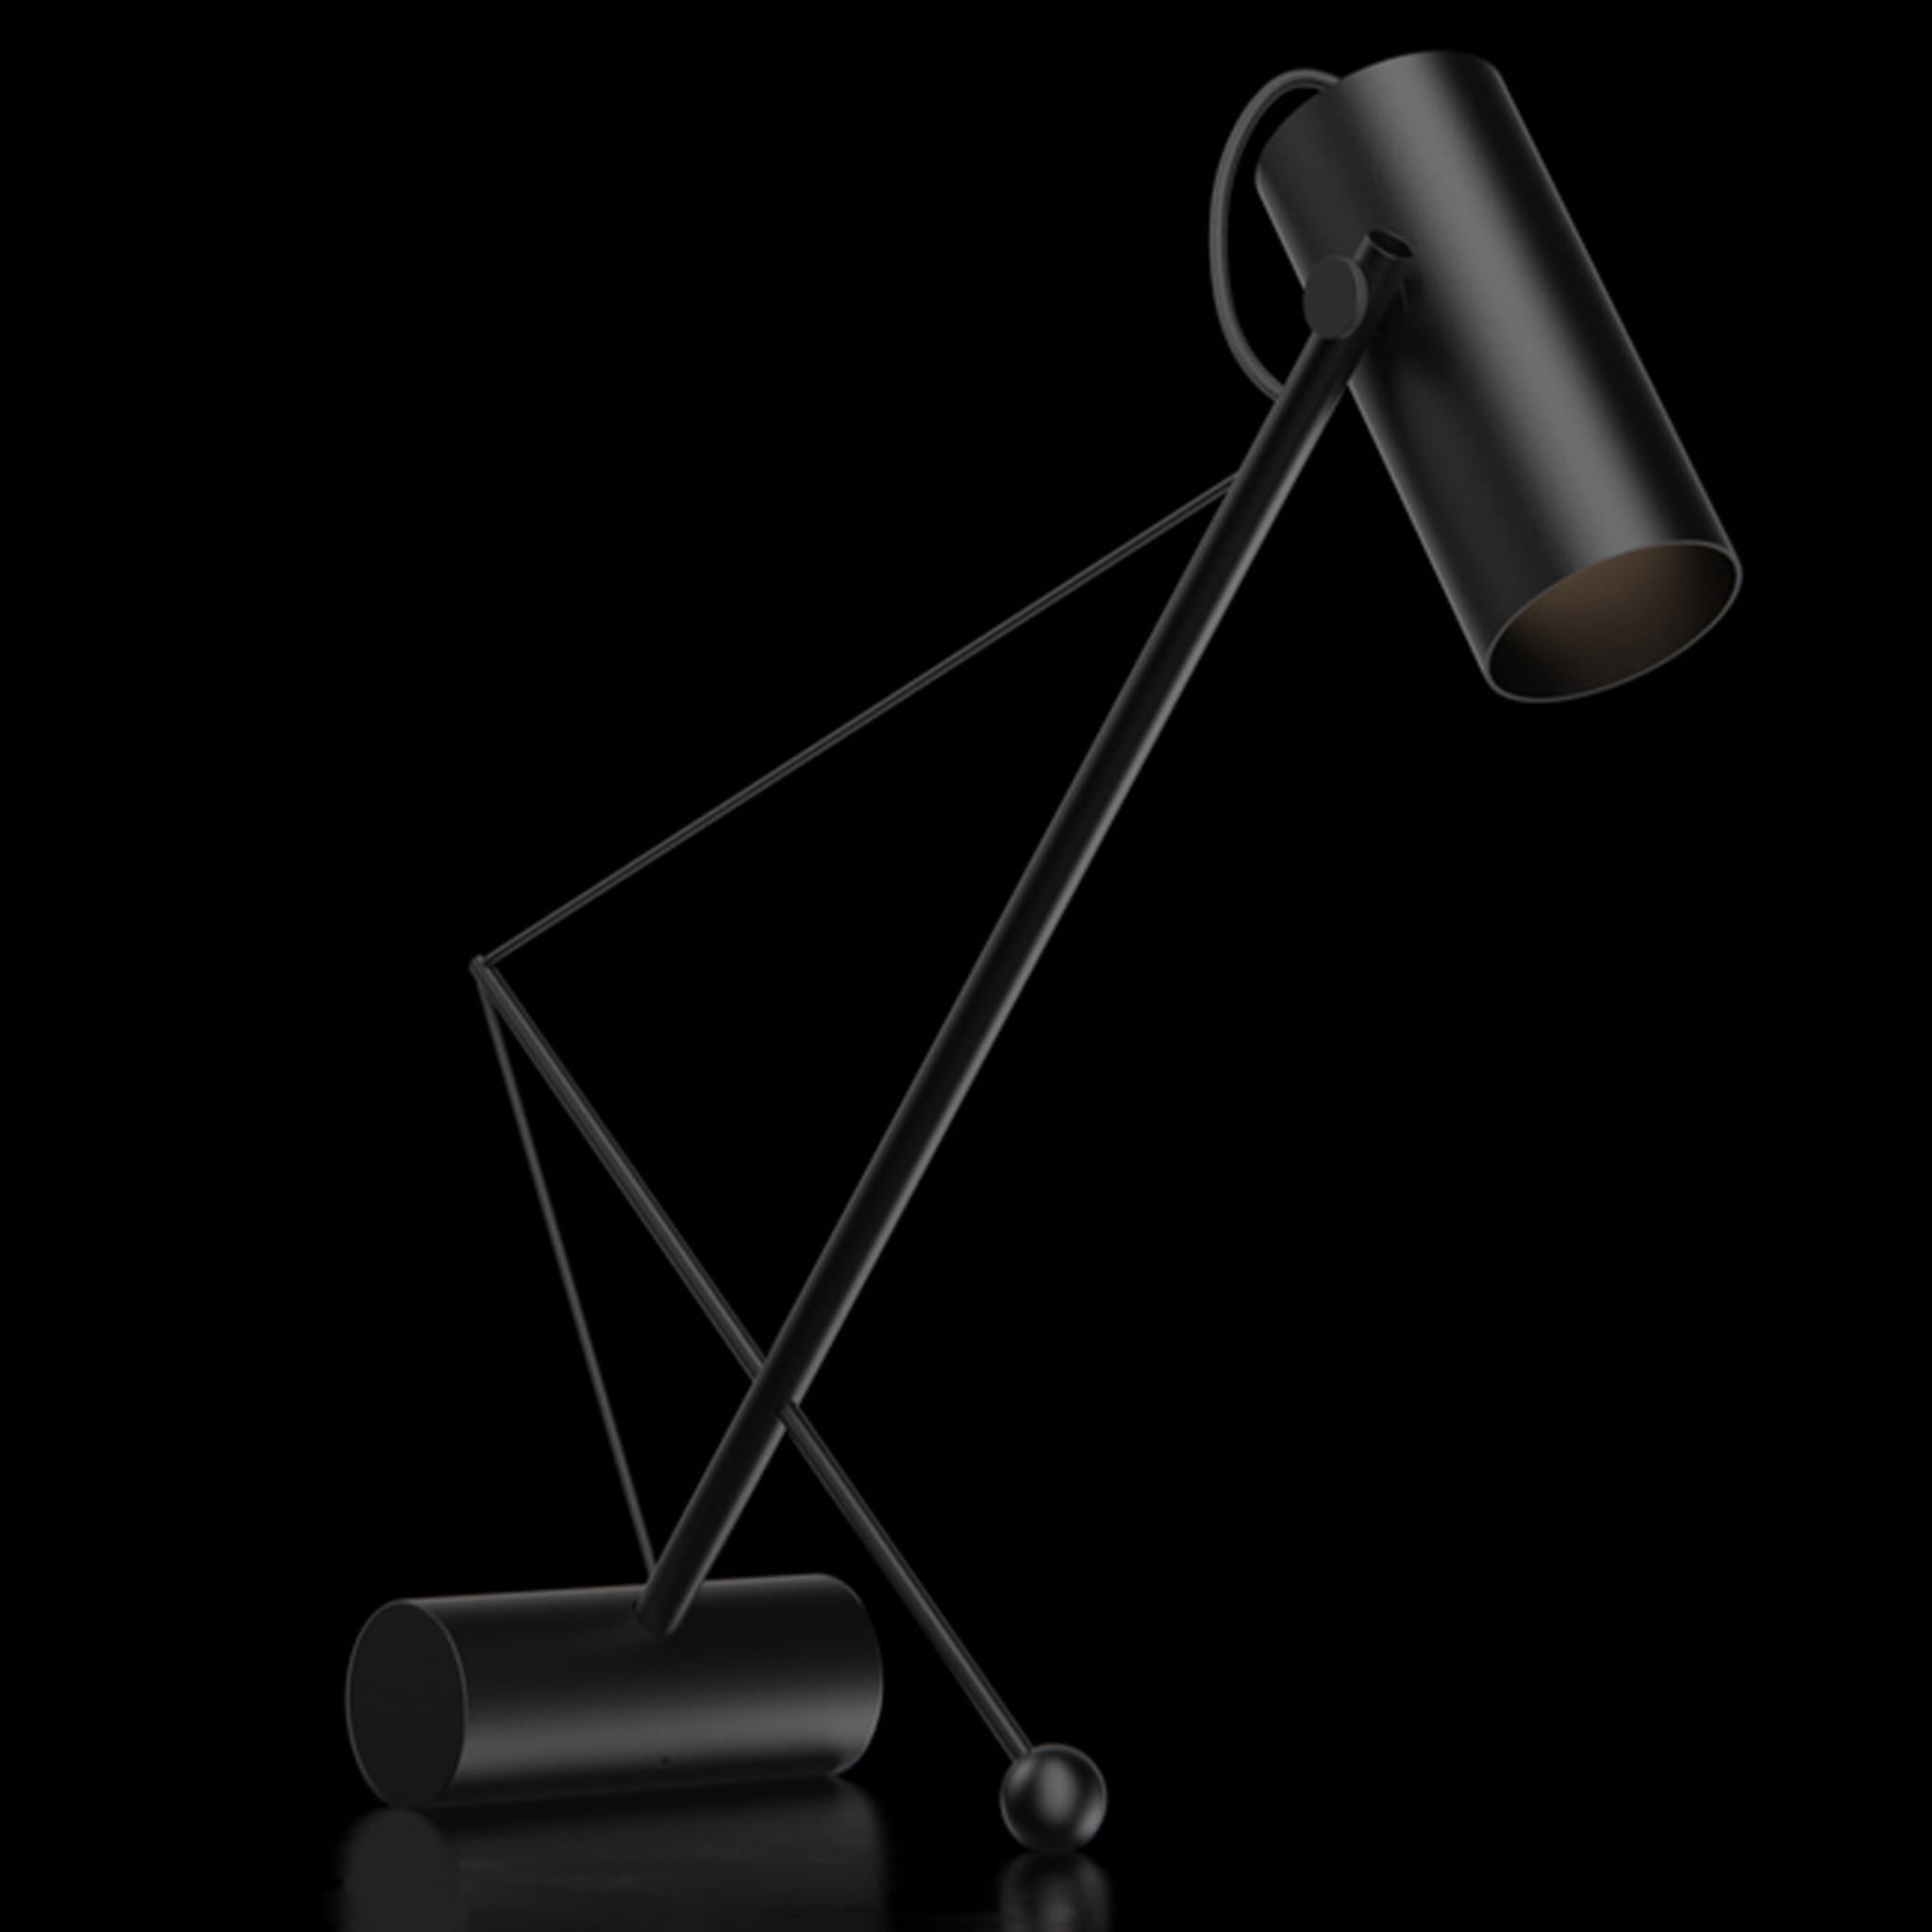 ED049 Black Desk Lamp - Alternative view 4